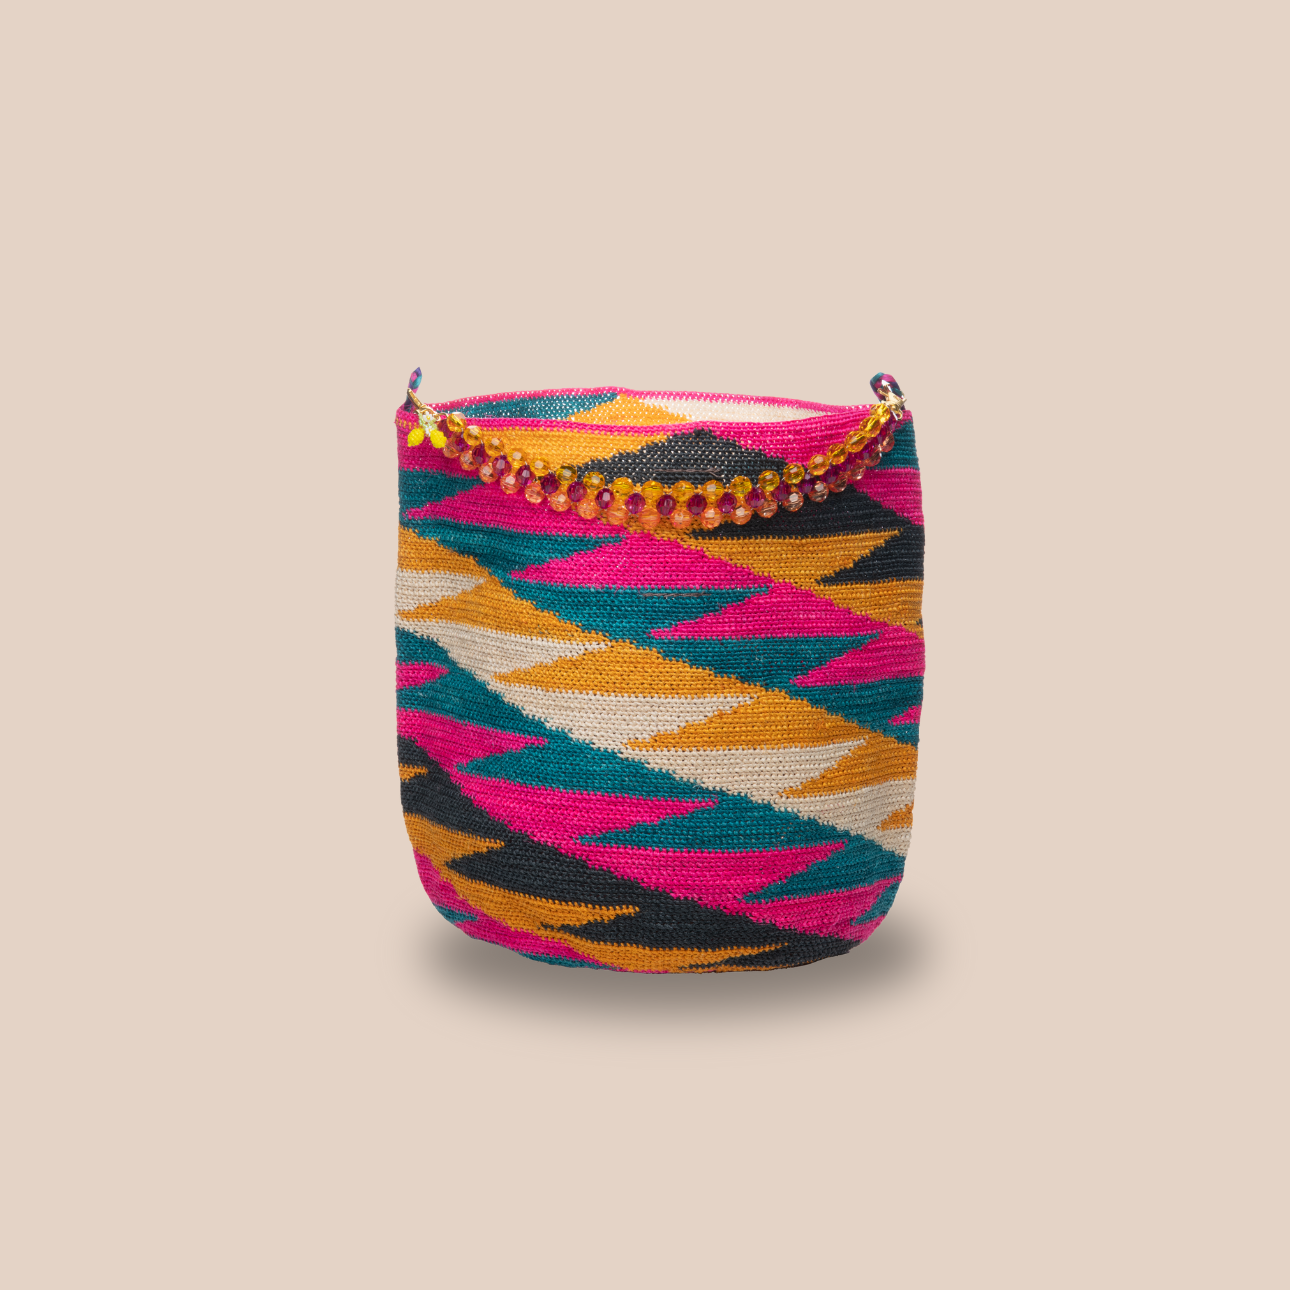 Image du sac princesa anses citron de Maison Badigo, sac en fibres naturelles de cactus multicolore unique et tendance